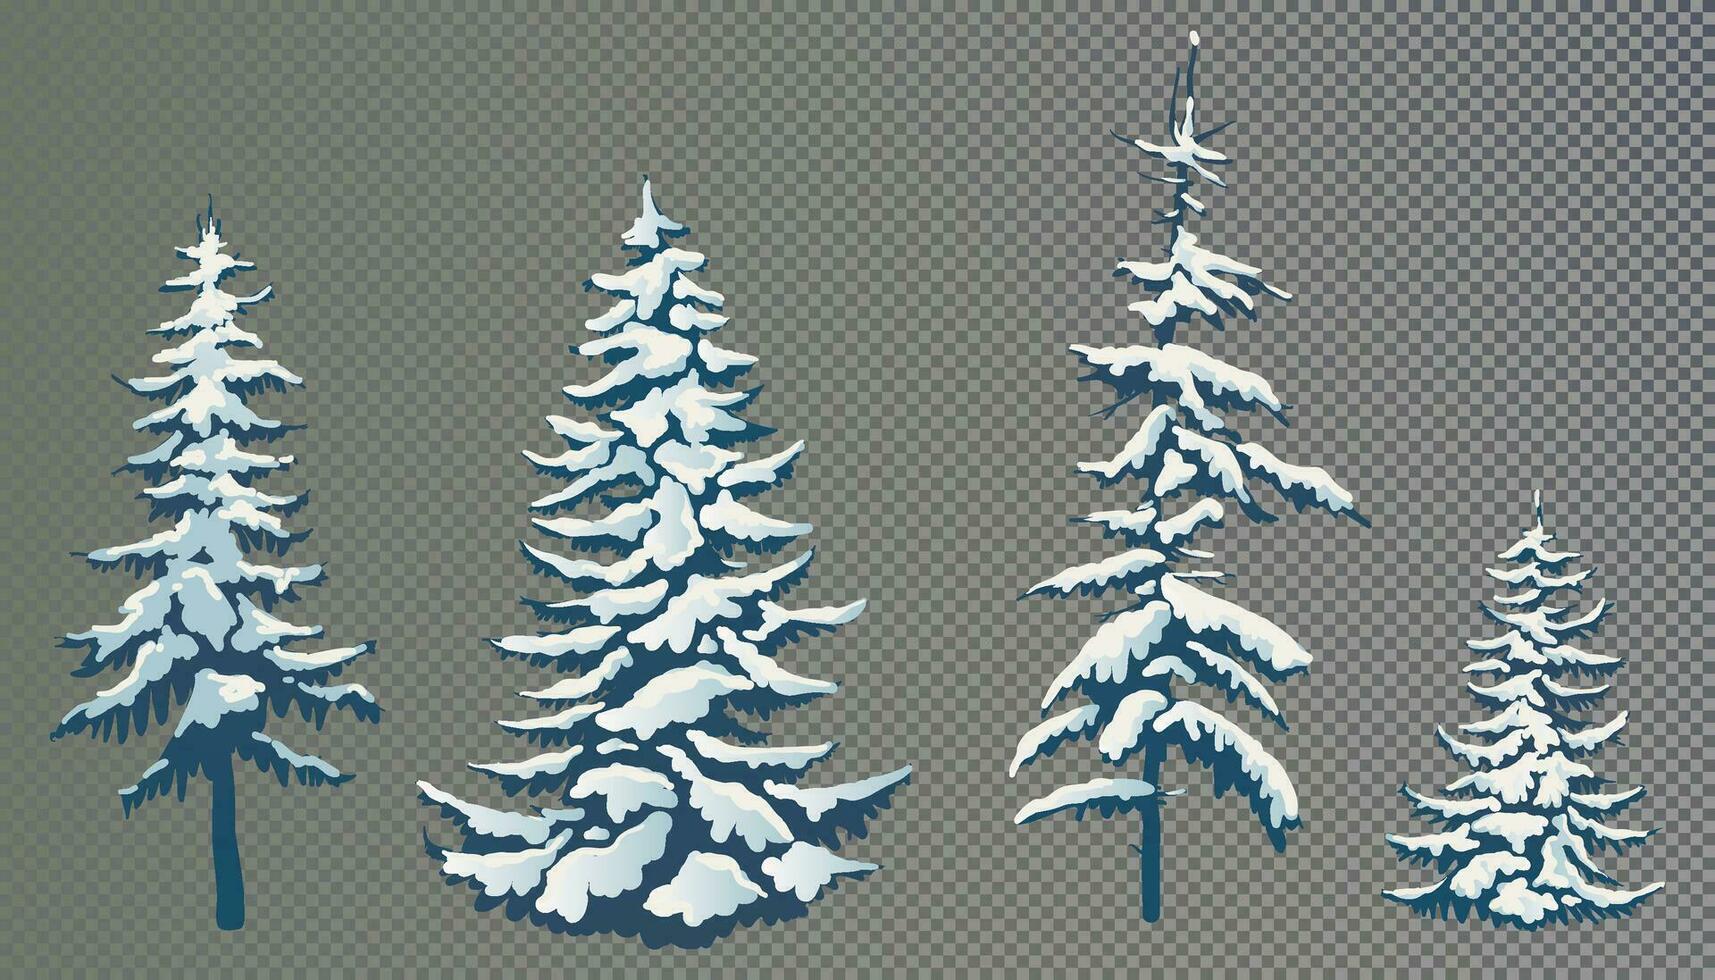 realistisch vector illustratie van een net boom in de sneeuw. groen pluizig pijnboom. winter met sneeuw bedekt bomen. elementen voor de Kerstmis tafereel.